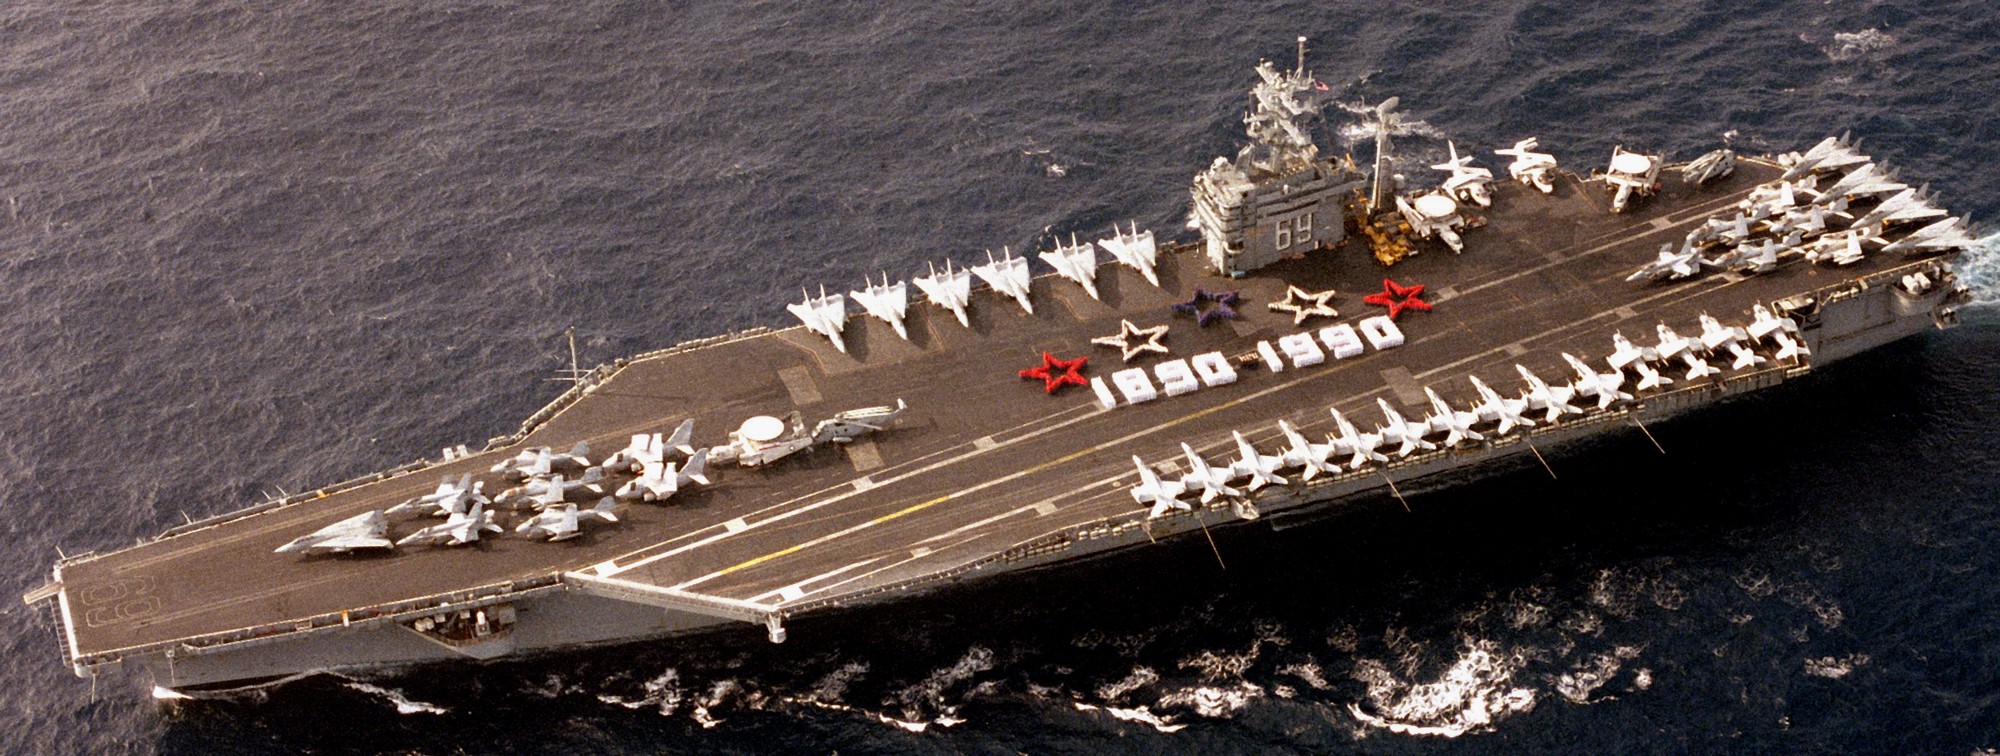 cvn-69 uss dwight d. eisenhower aircraft carrier air wing cvw-7 us navy 353